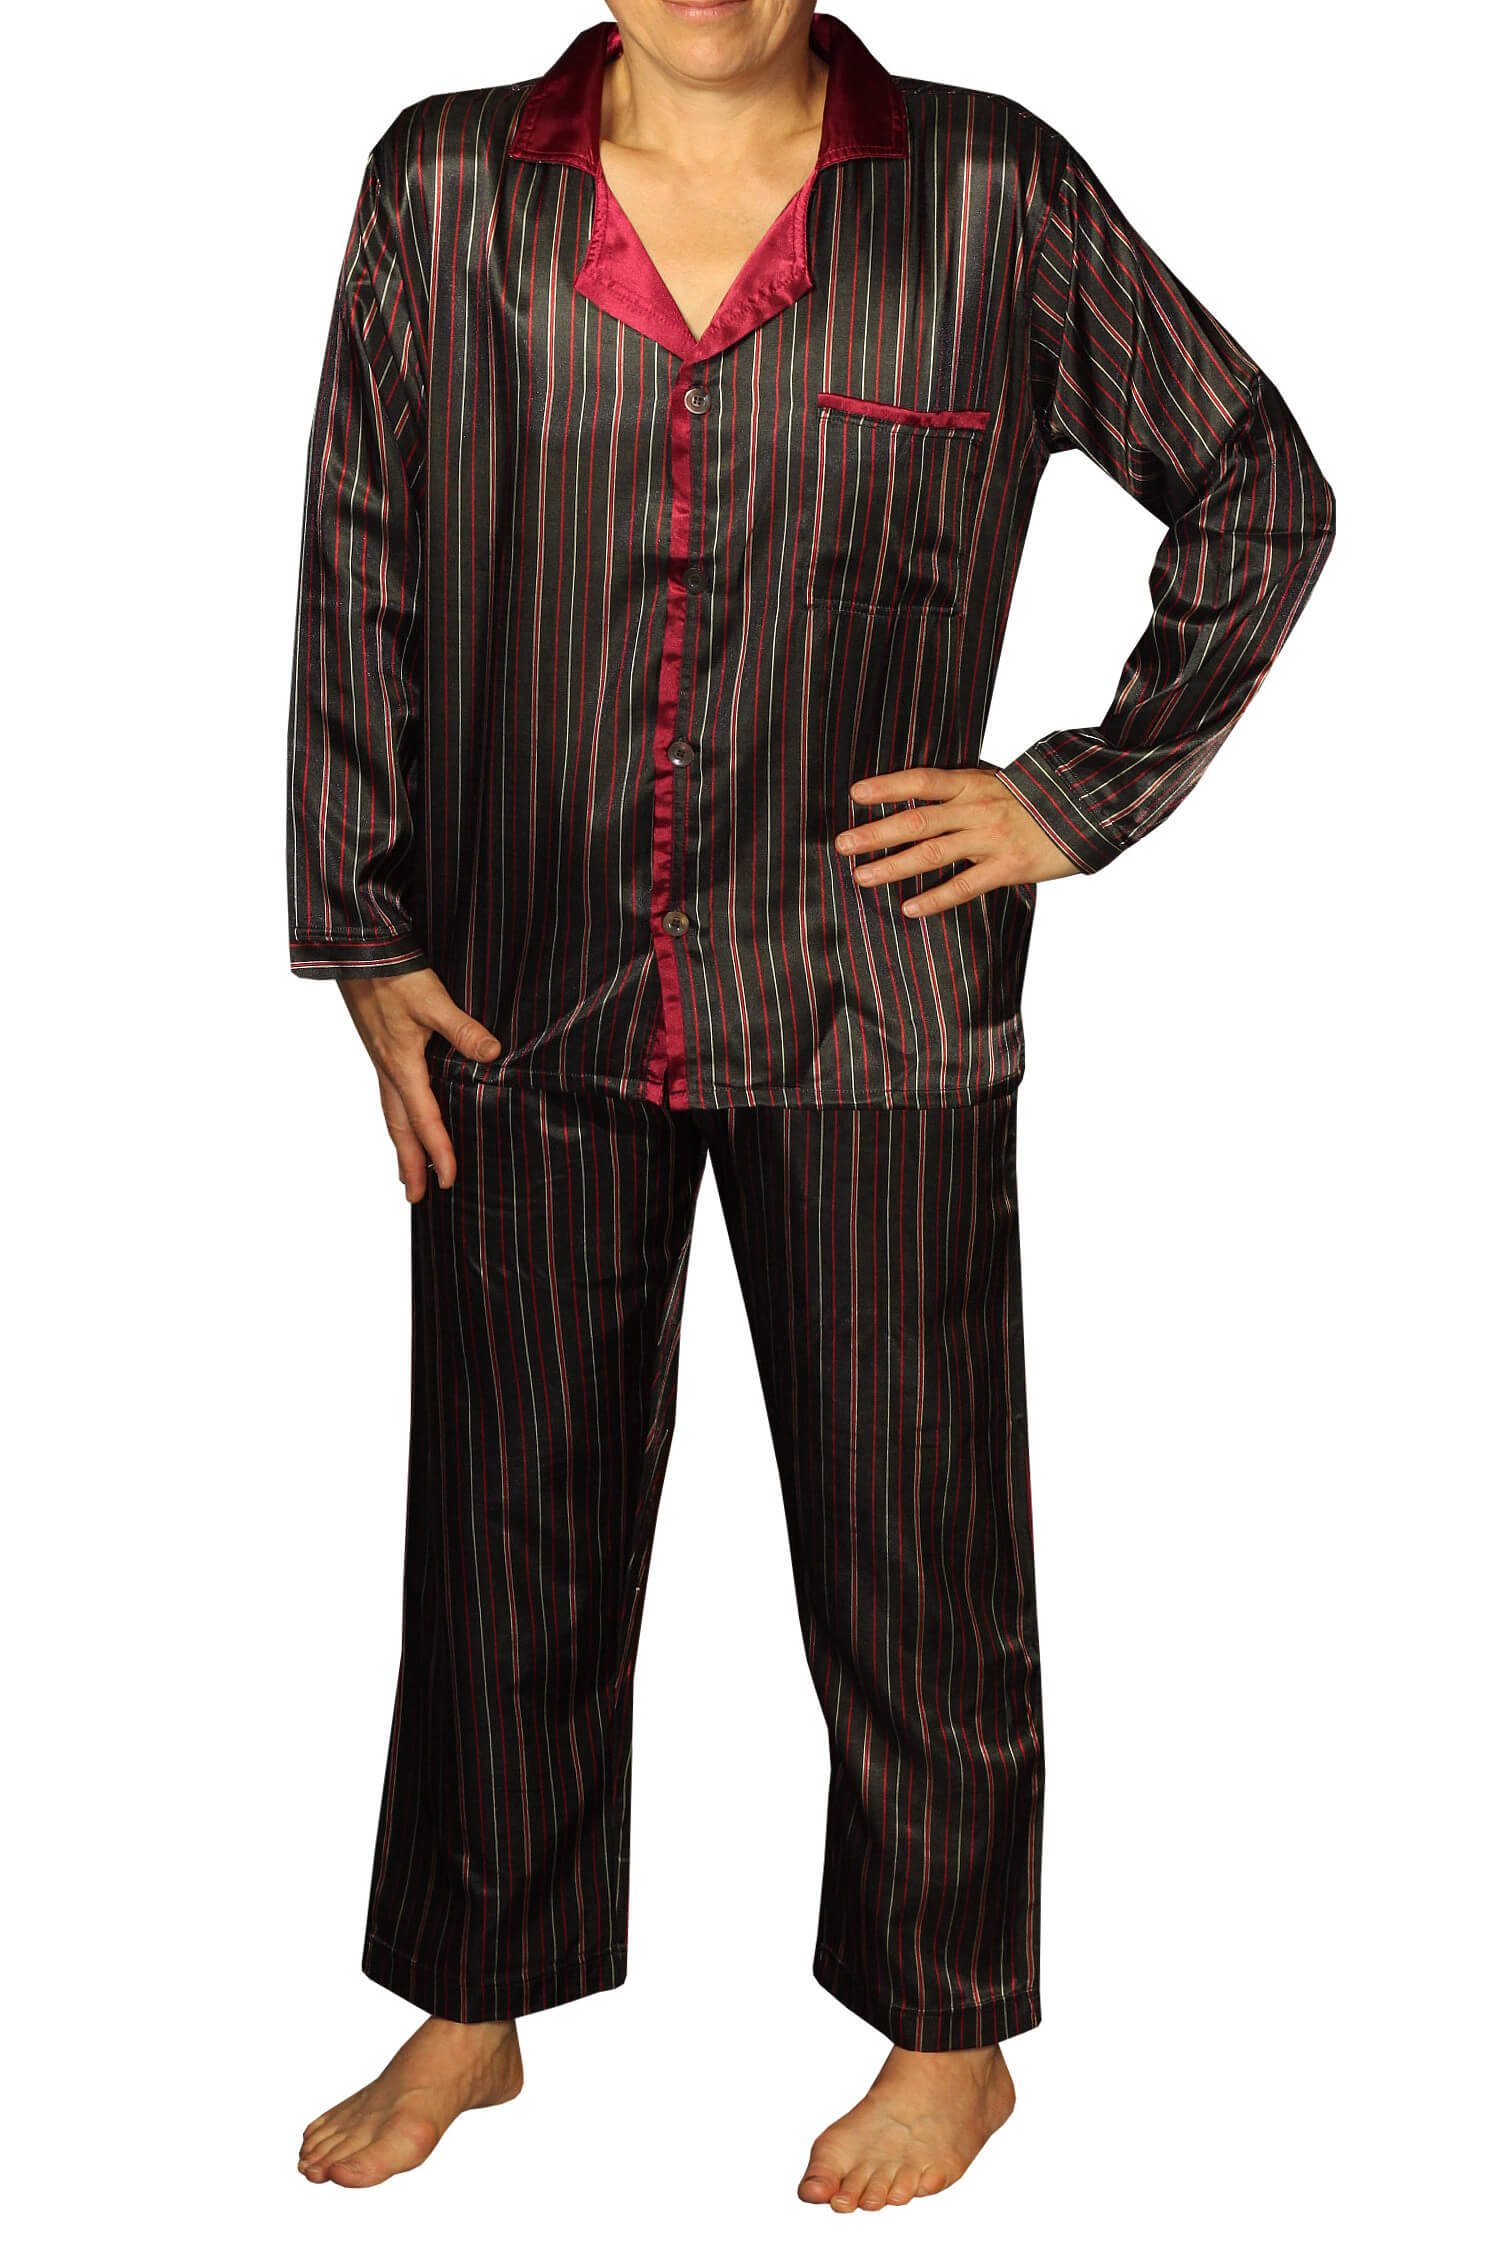 Zapata Satin pánské pyžamo proužky K150814 XL vínová